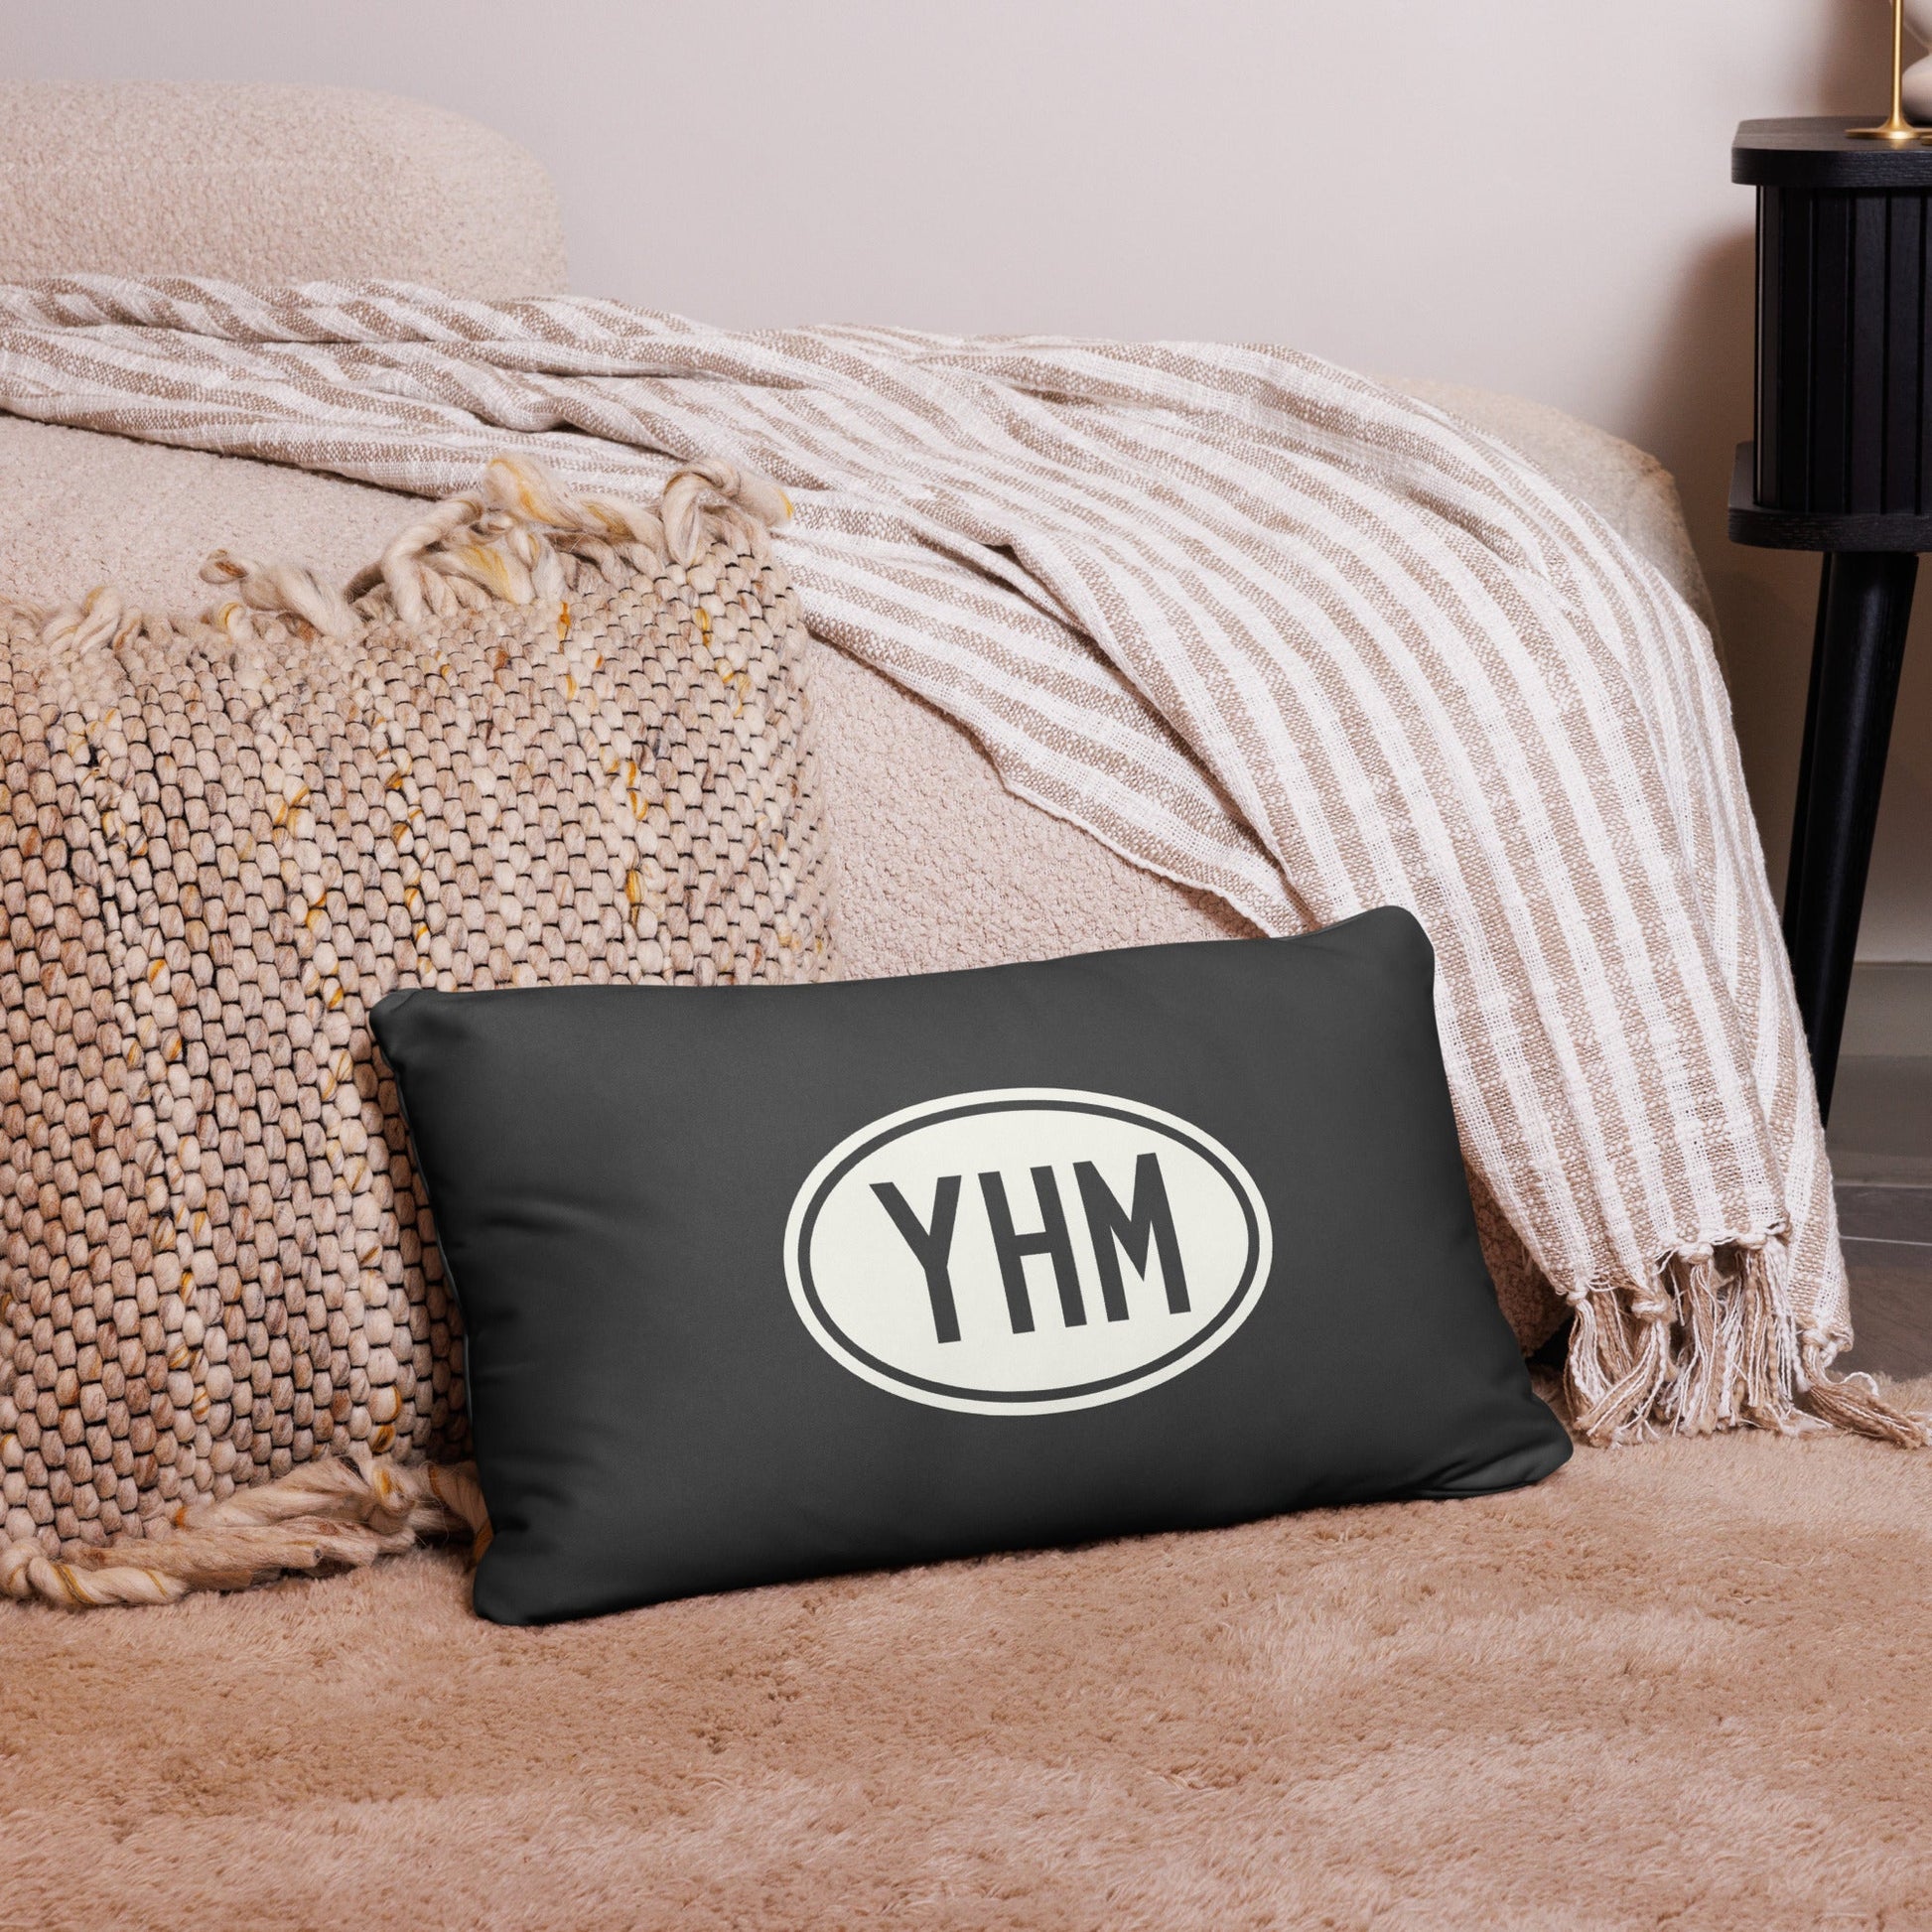 Unique Travel Gift Throw Pillow - White Oval • YXE Saskatoon • YHM Designs - Image 05